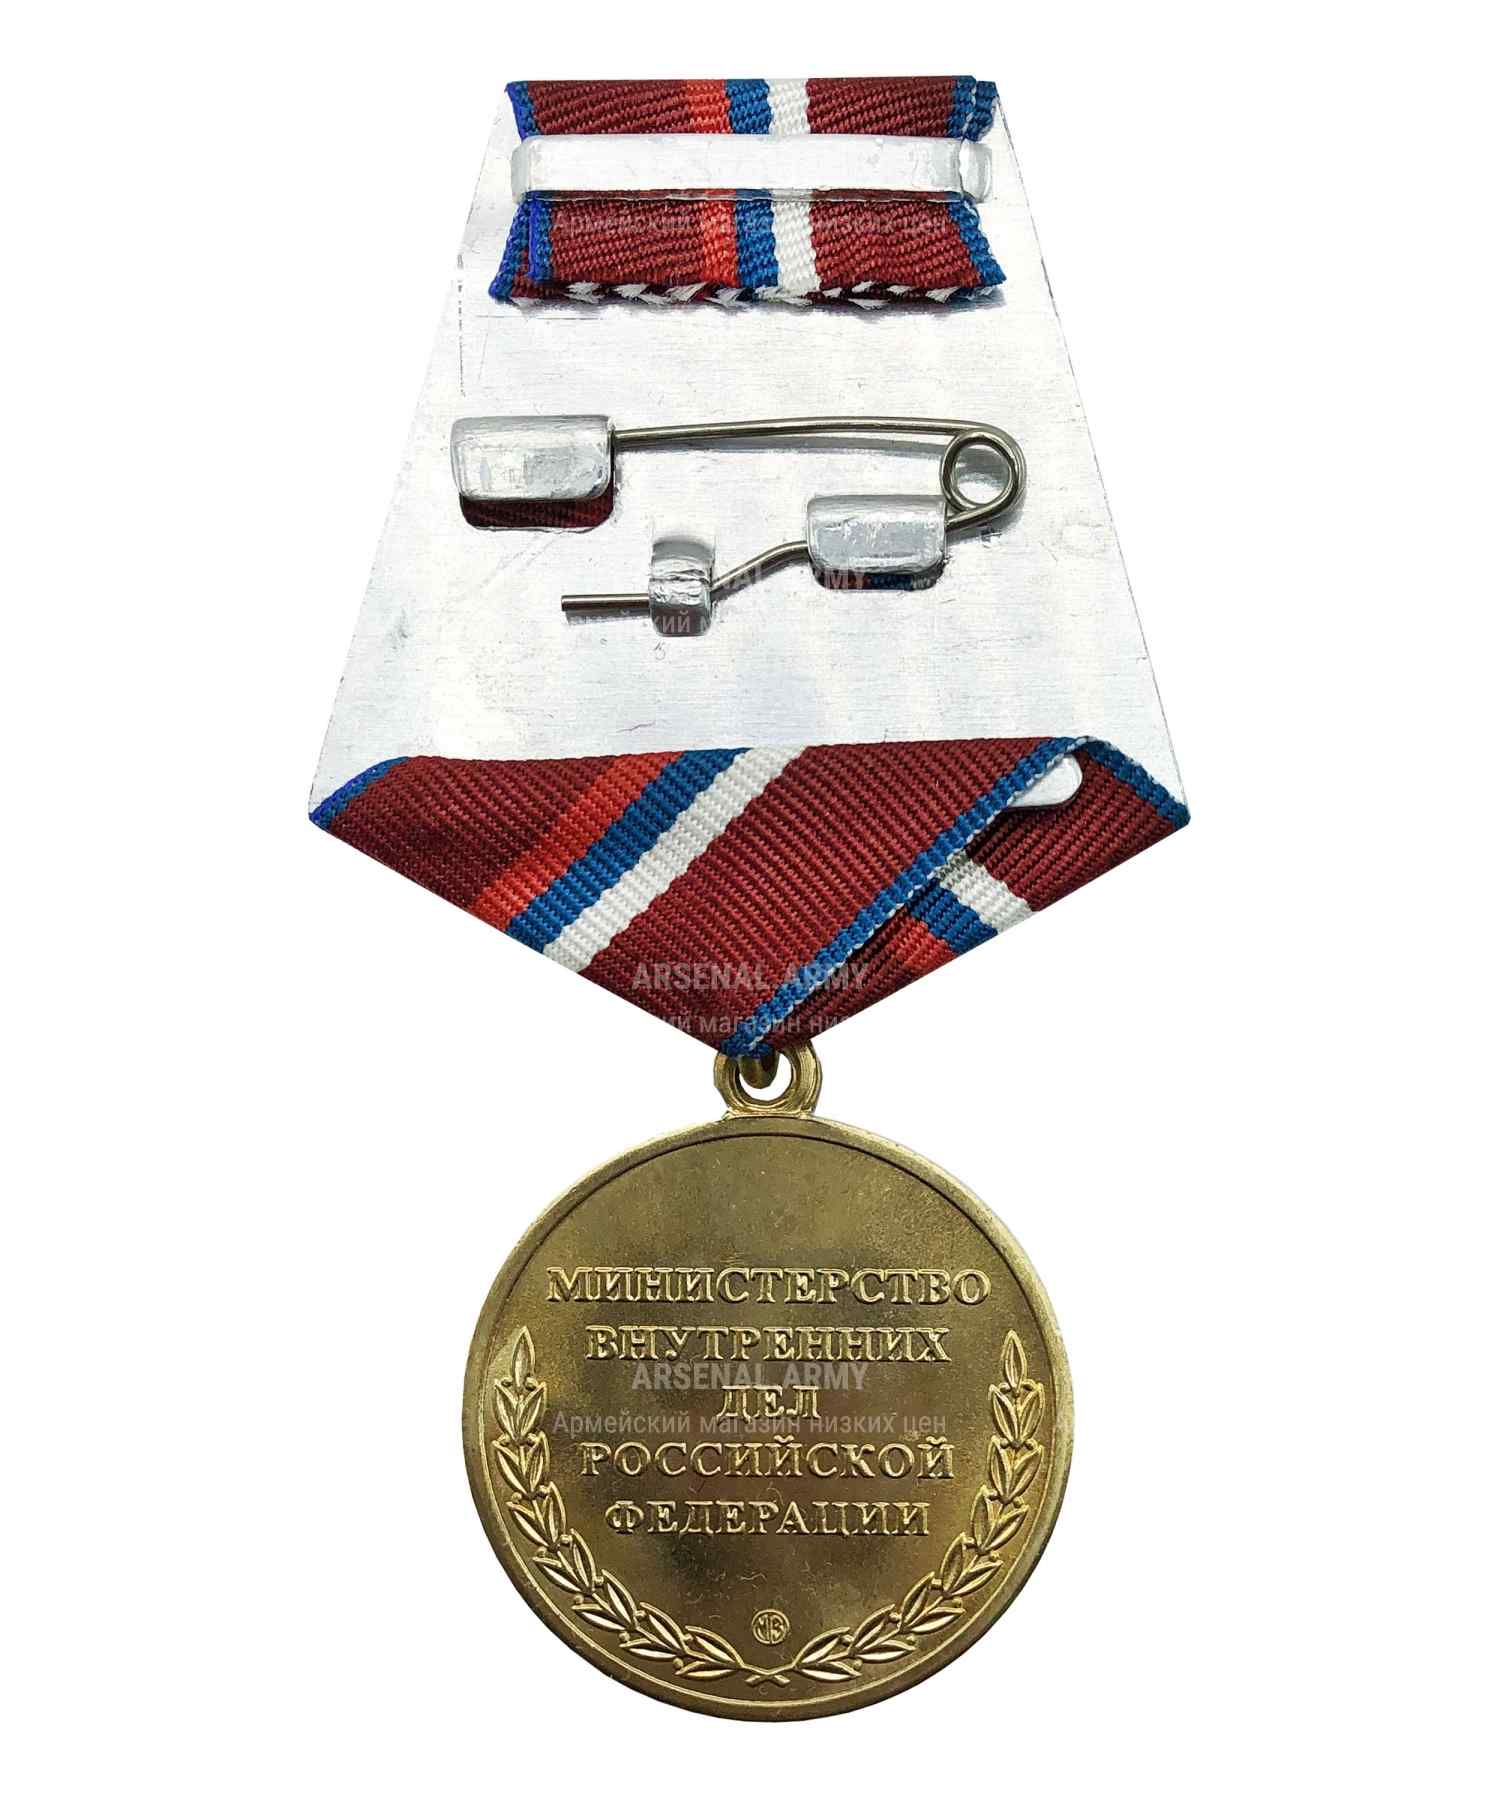 Медаль "Участнику боевых действий на Северном Кавказе"